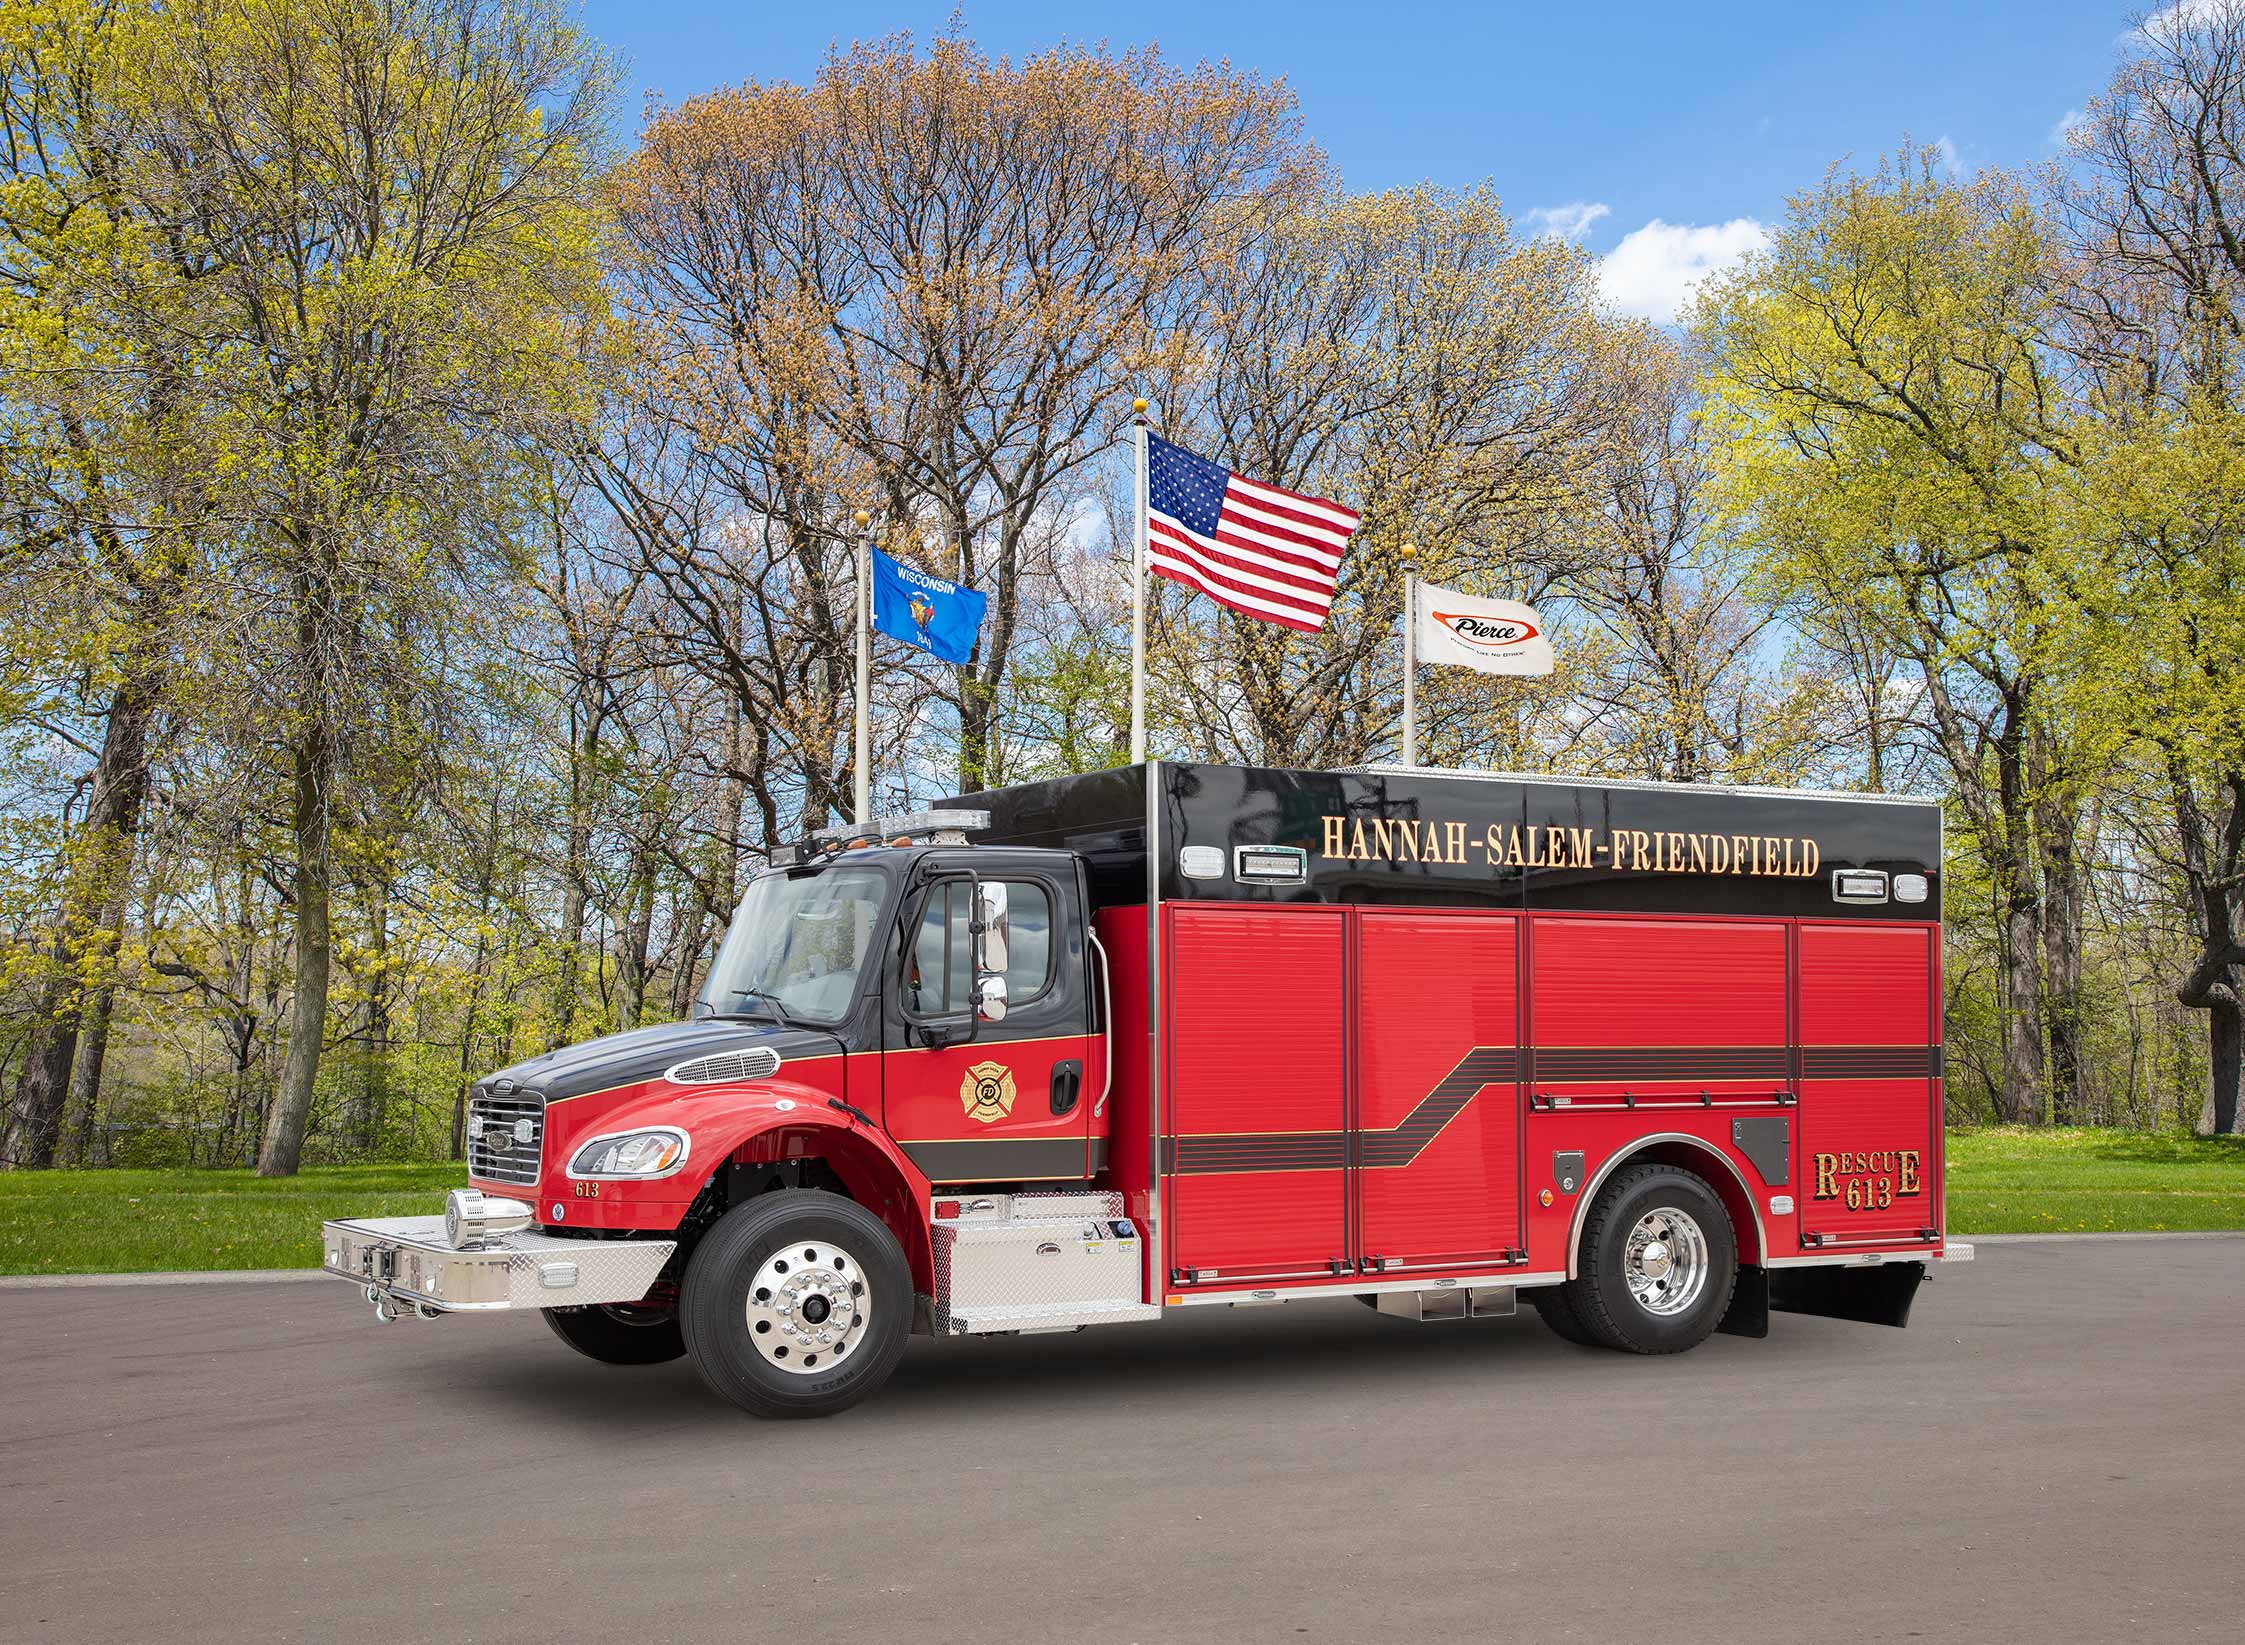 Hannah-Salem-Friendfield Fire Department - Rescue